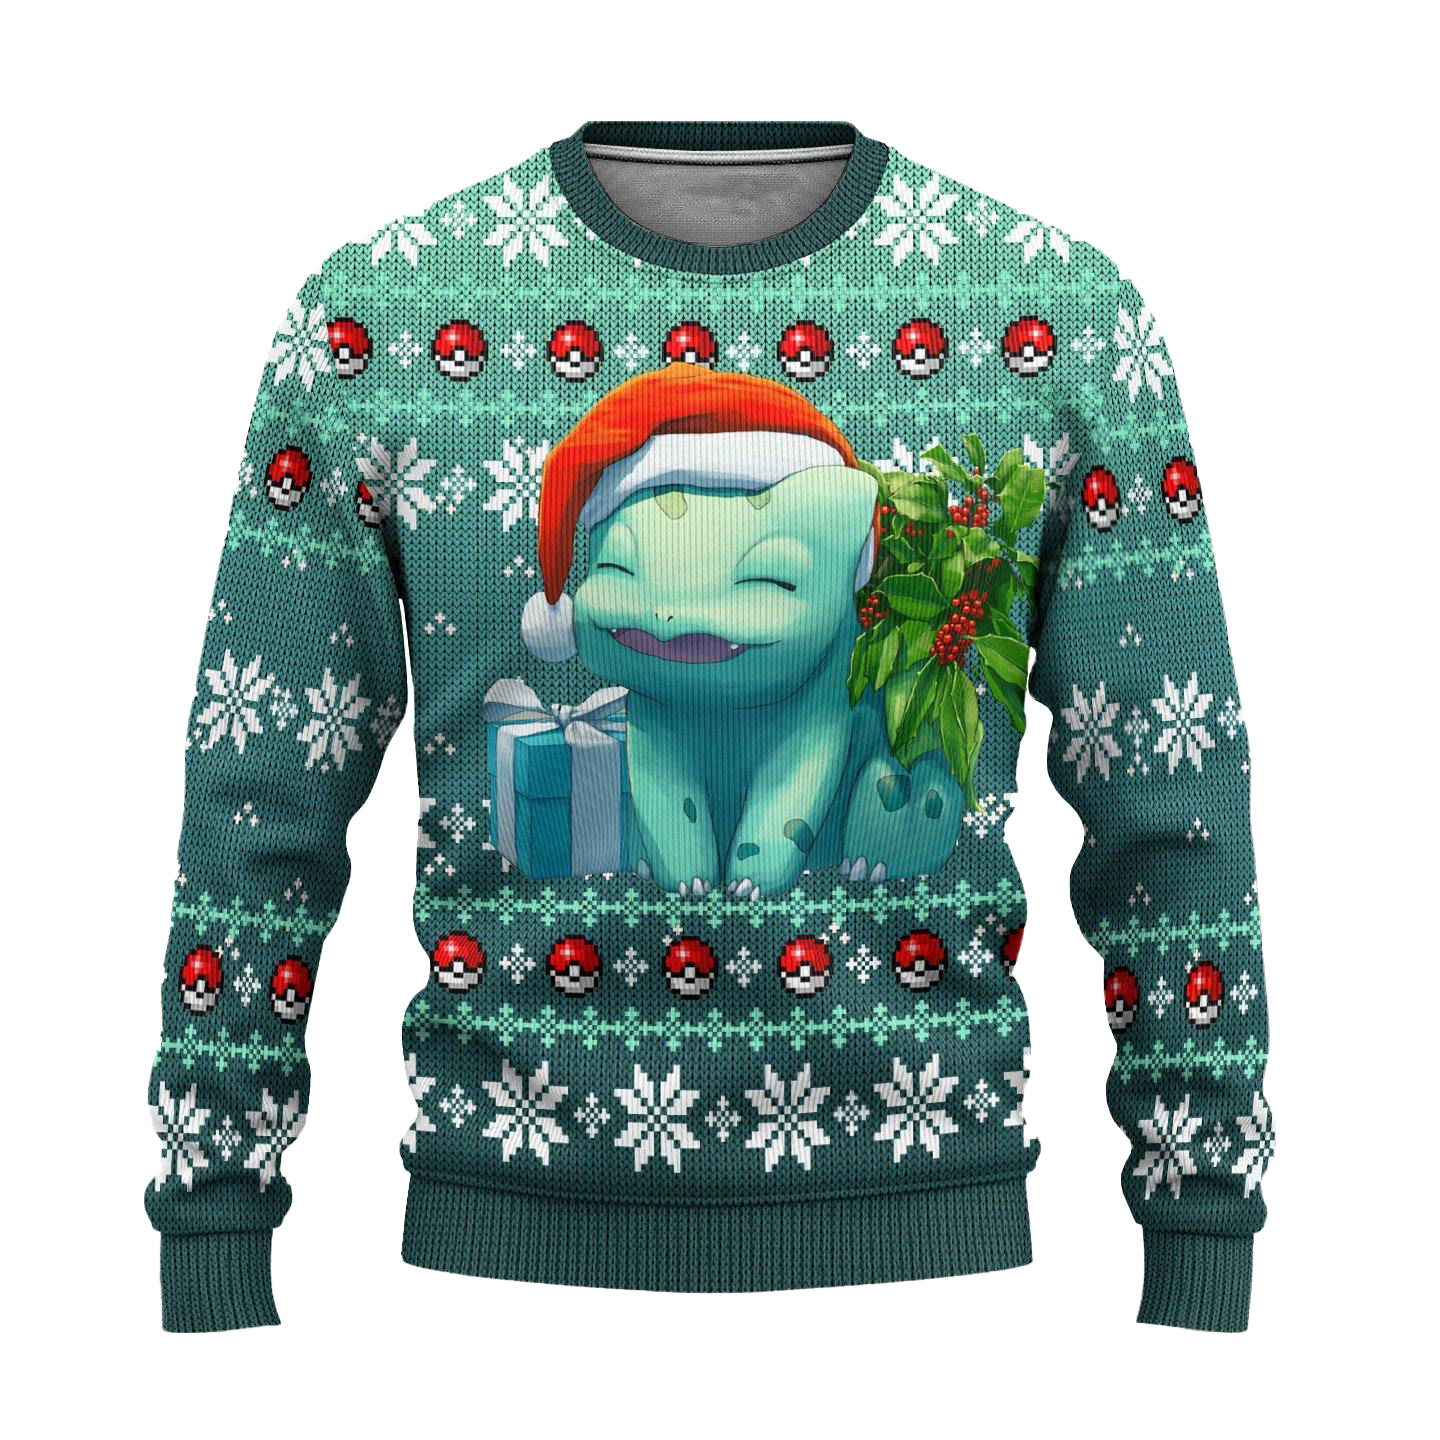 Pokemon Bulbasaur Anime Ugly Christmas Sweater Xmas Gift